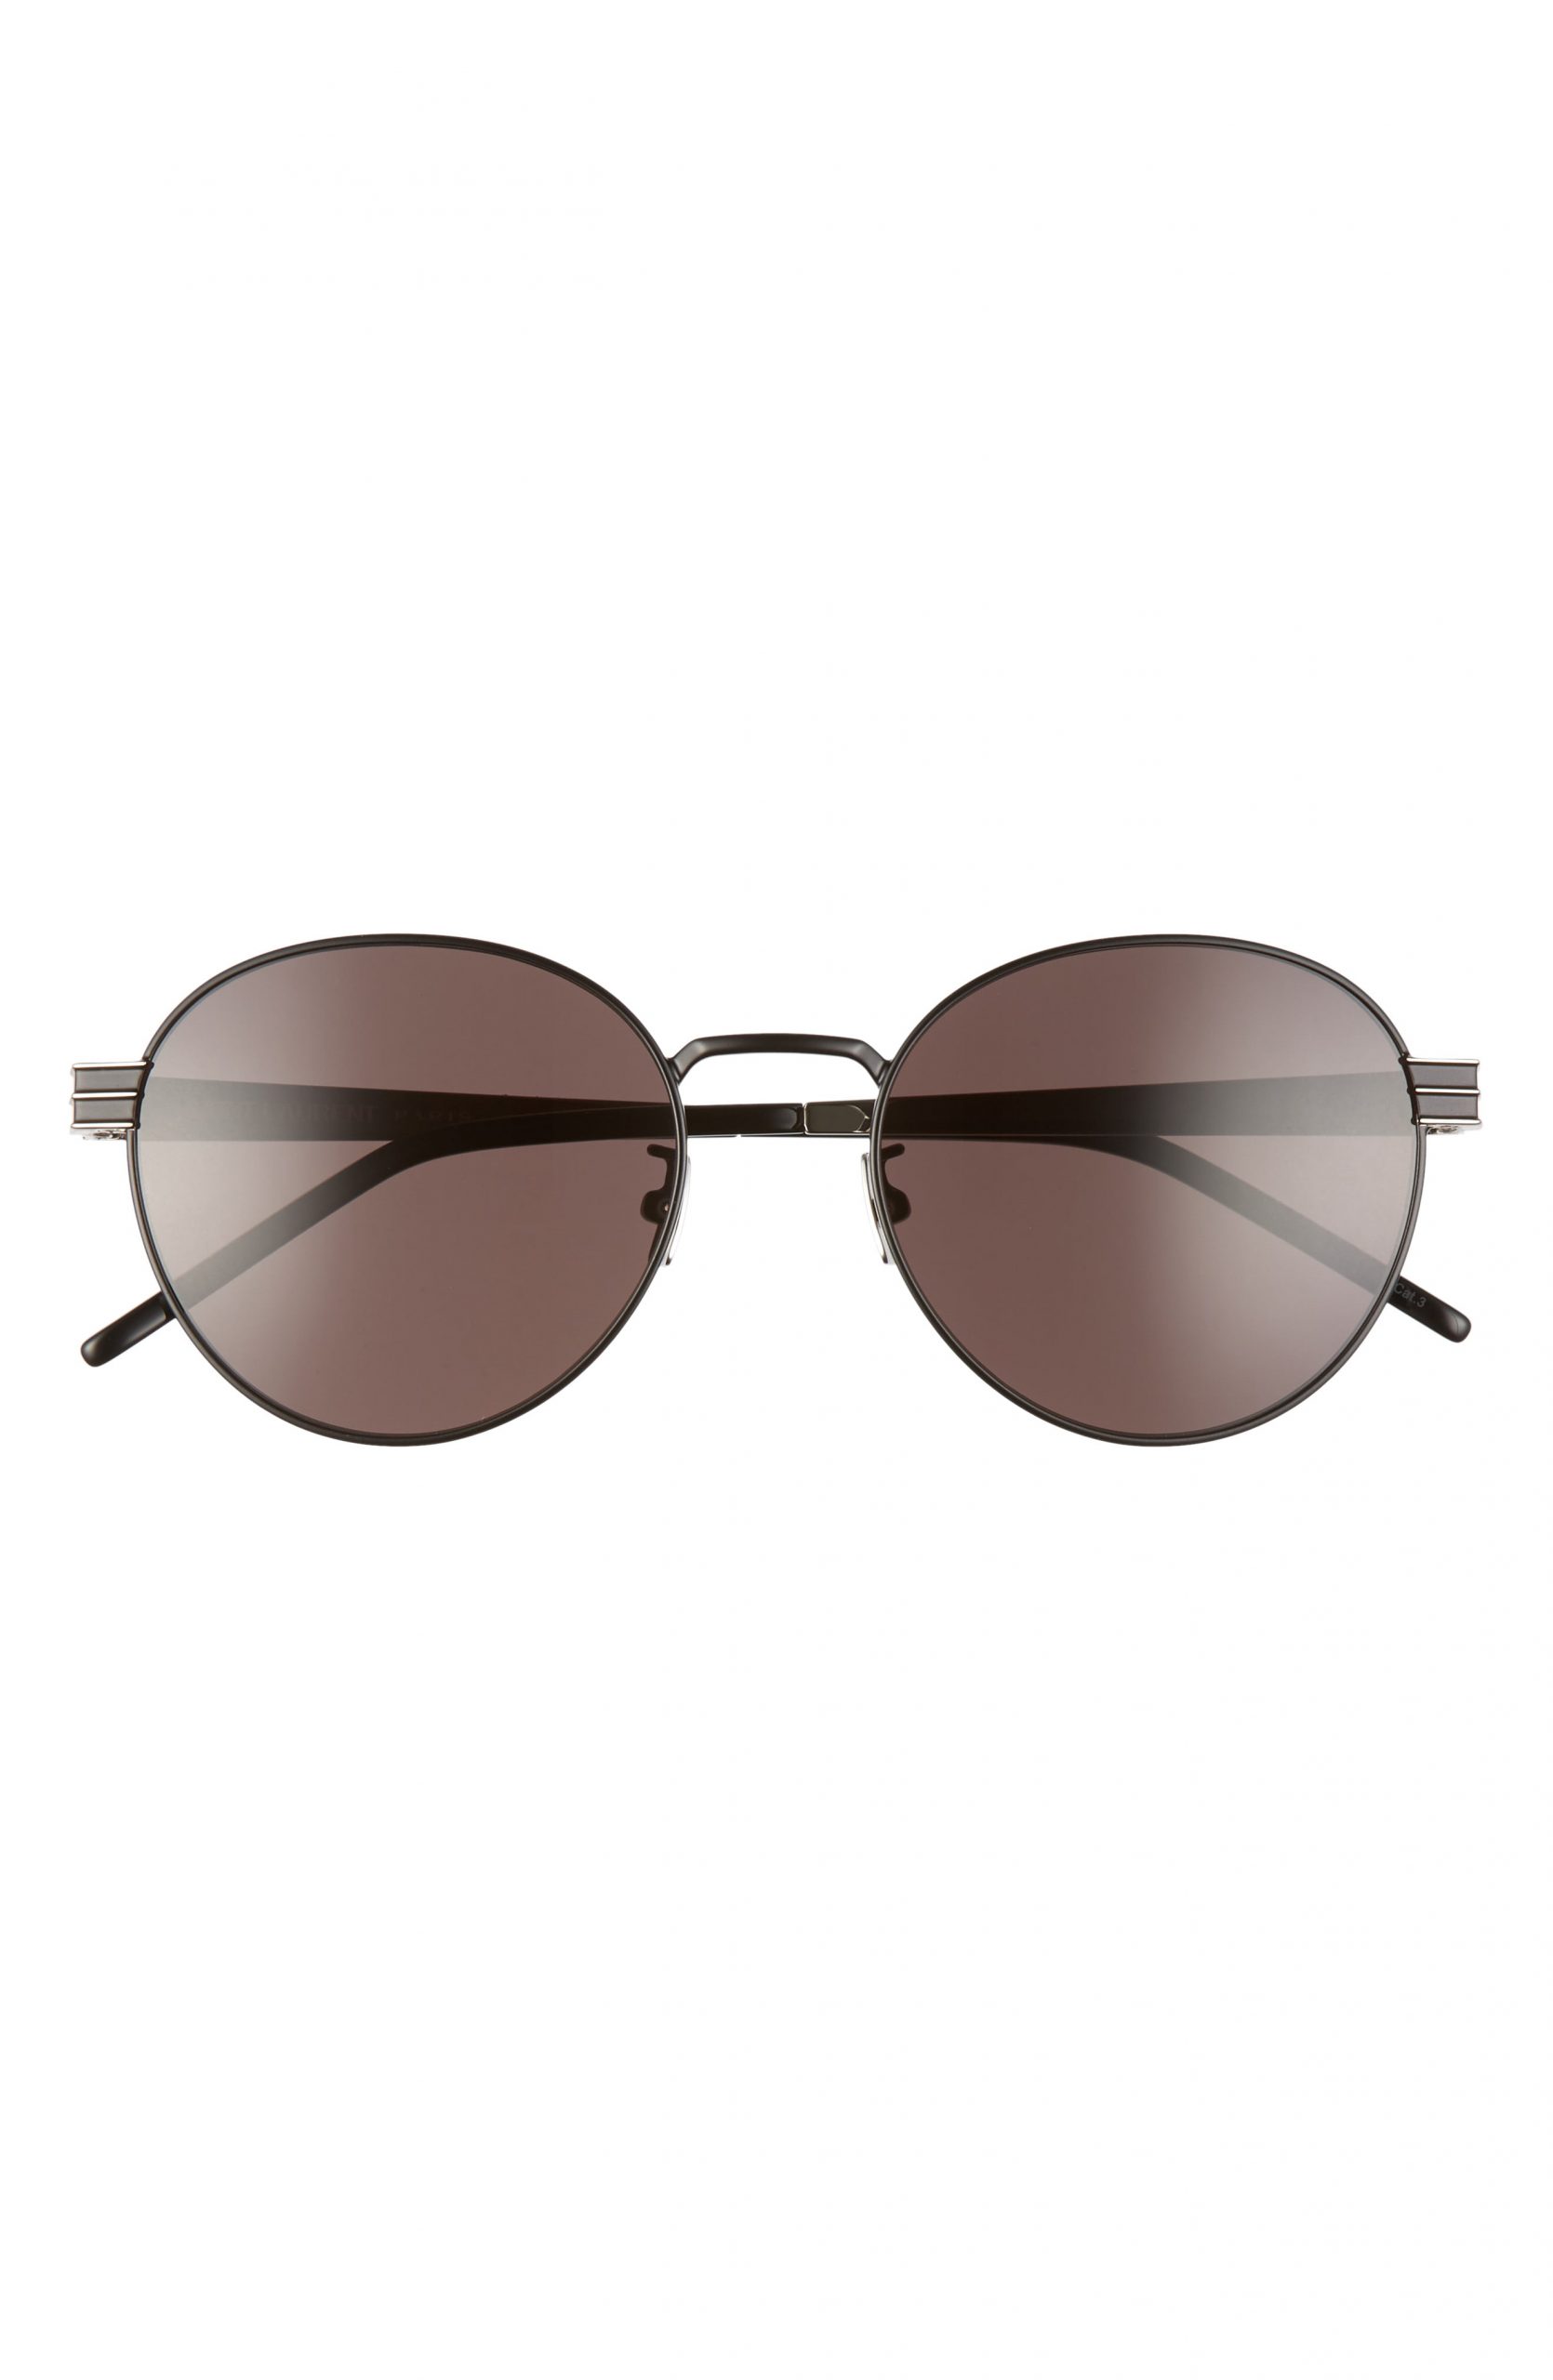 Men’s Saint Laurent 55mm Oval Sunglasses - Semi Matte/ Black | The ...